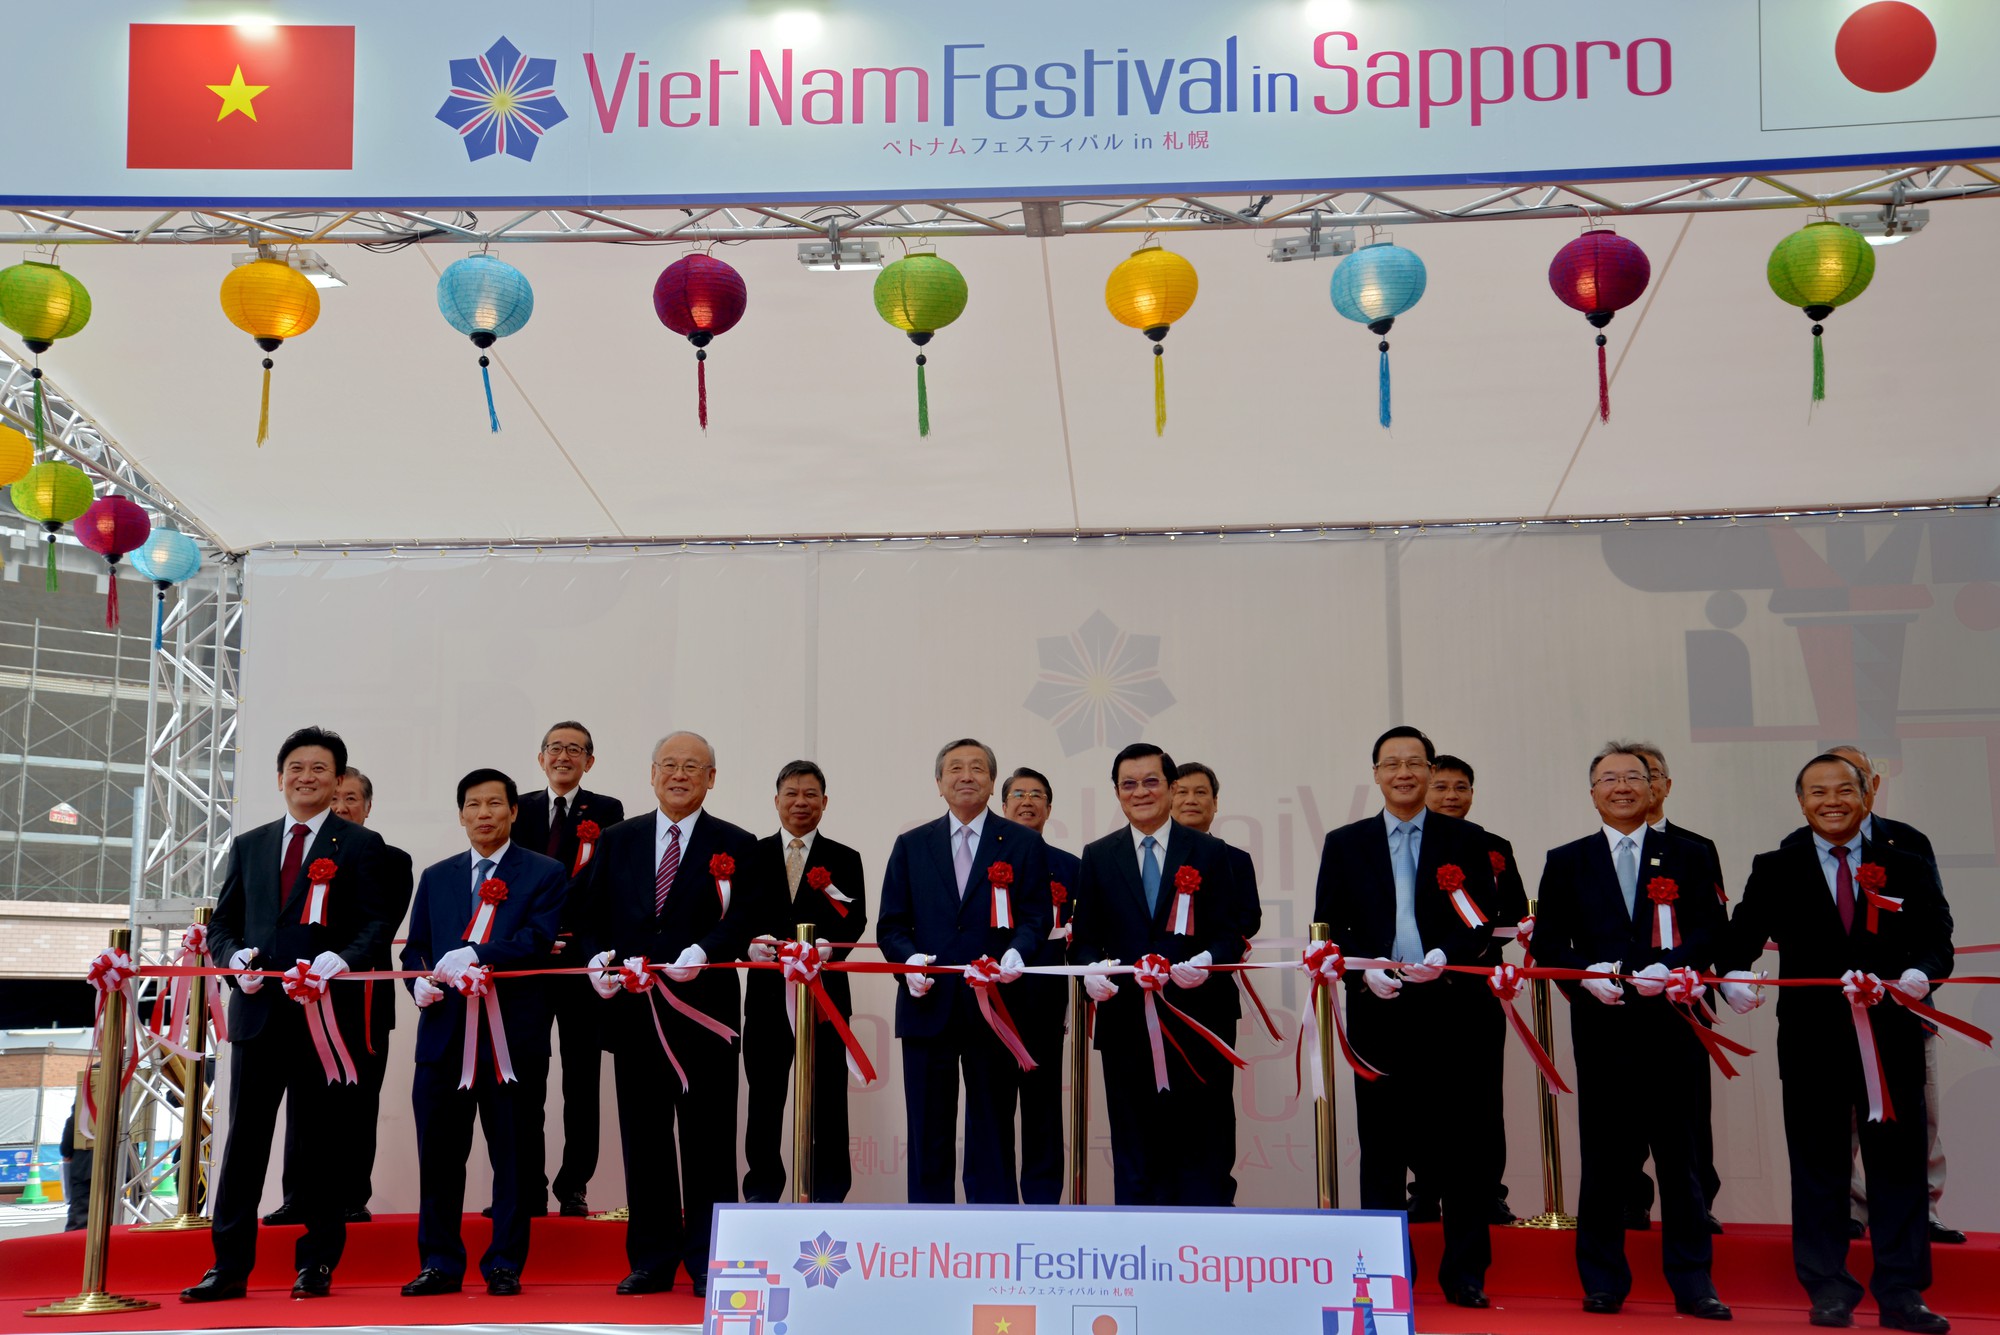 Khai mạc Lễ hội Việt Nam tại Sapporo năm 2019 lần thứ nhất